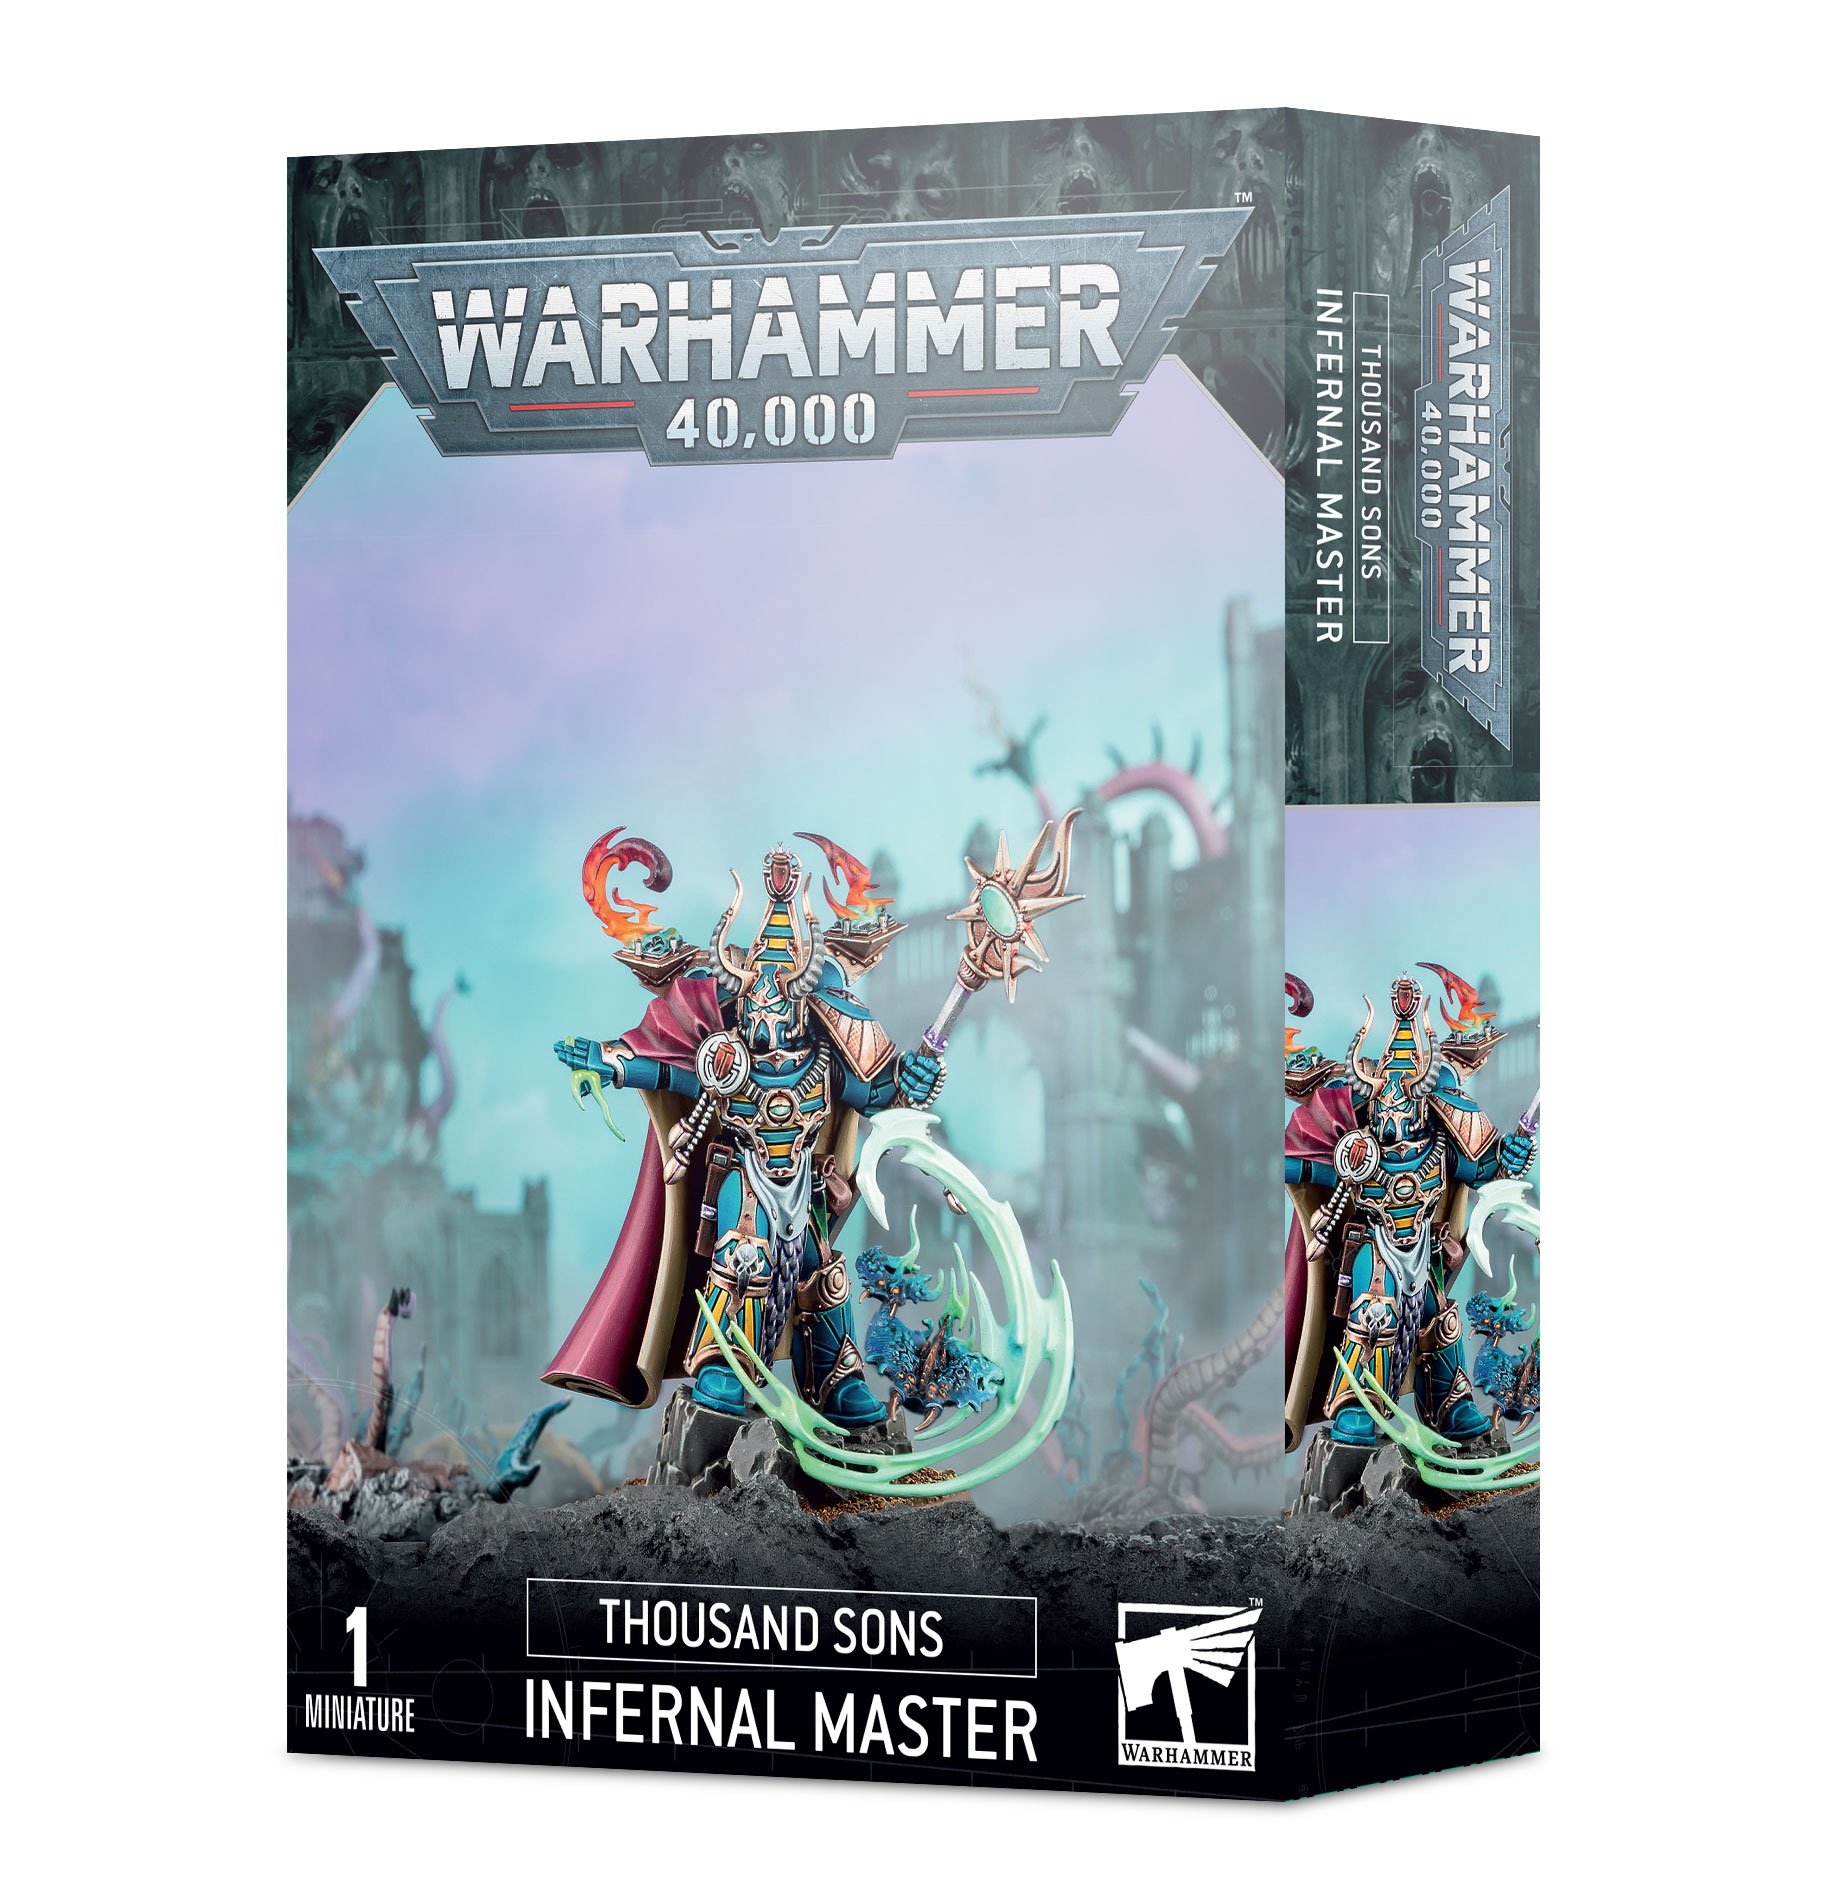 Warhammer 40,000: Thousand Sons: Infernal Master 